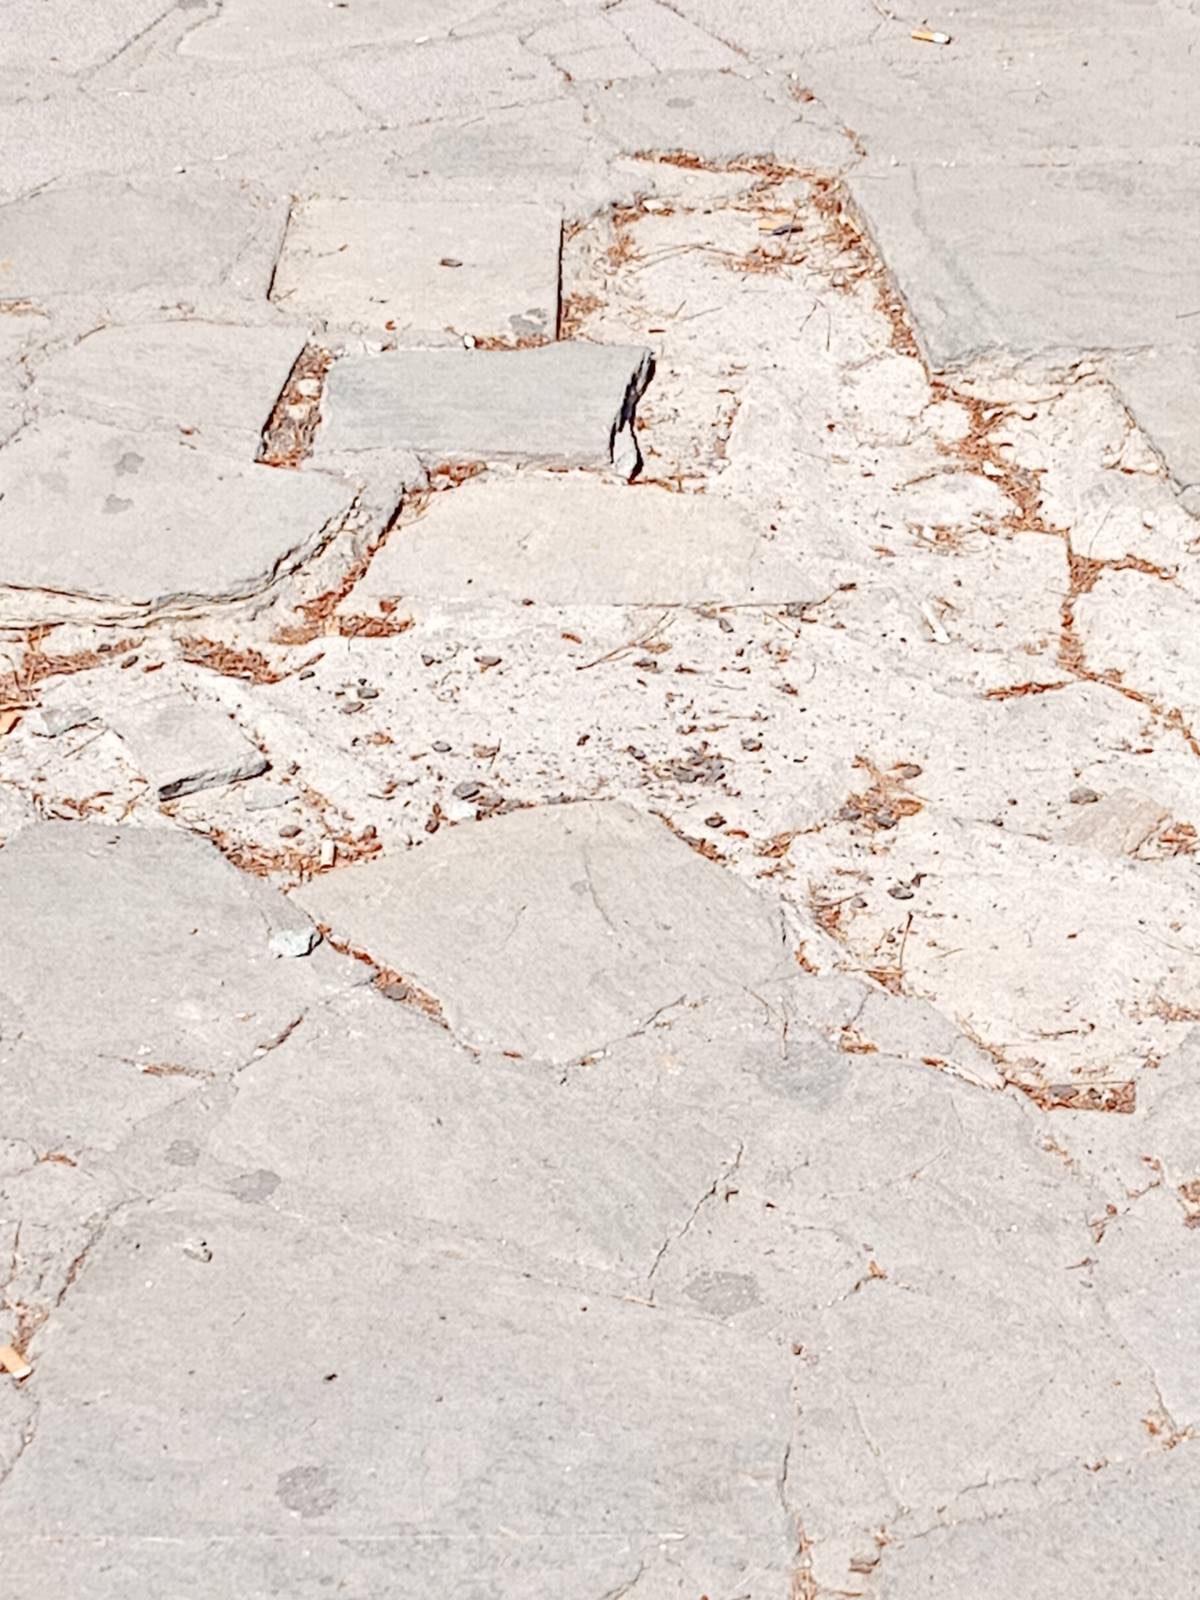 Παράπονο αναγνώστη : Η σύζυγος μου κόντεψε να ''τσακιστεί'' σε κατεστραμμένα πλακάκια στο παλαιό πάρκο Πτολεμαΐδας (φωτογραφίες